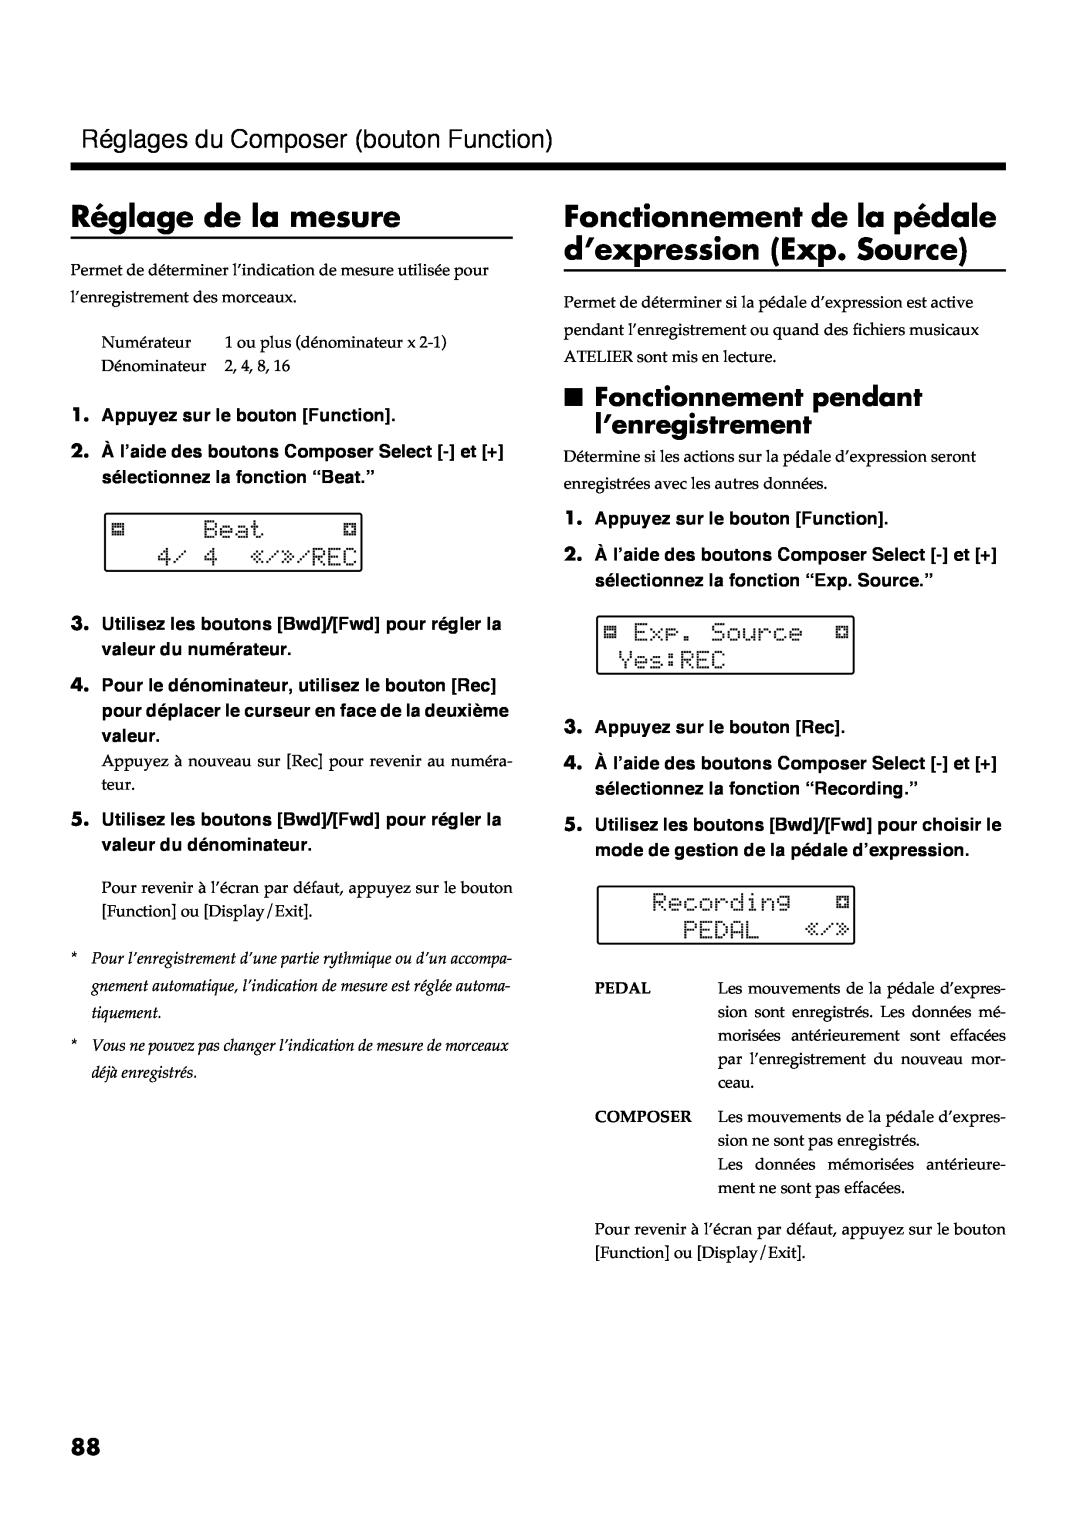 Roland AT30R manual Réglage de la mesure, Fonctionnement de la pédale d’expression Exp. Source 